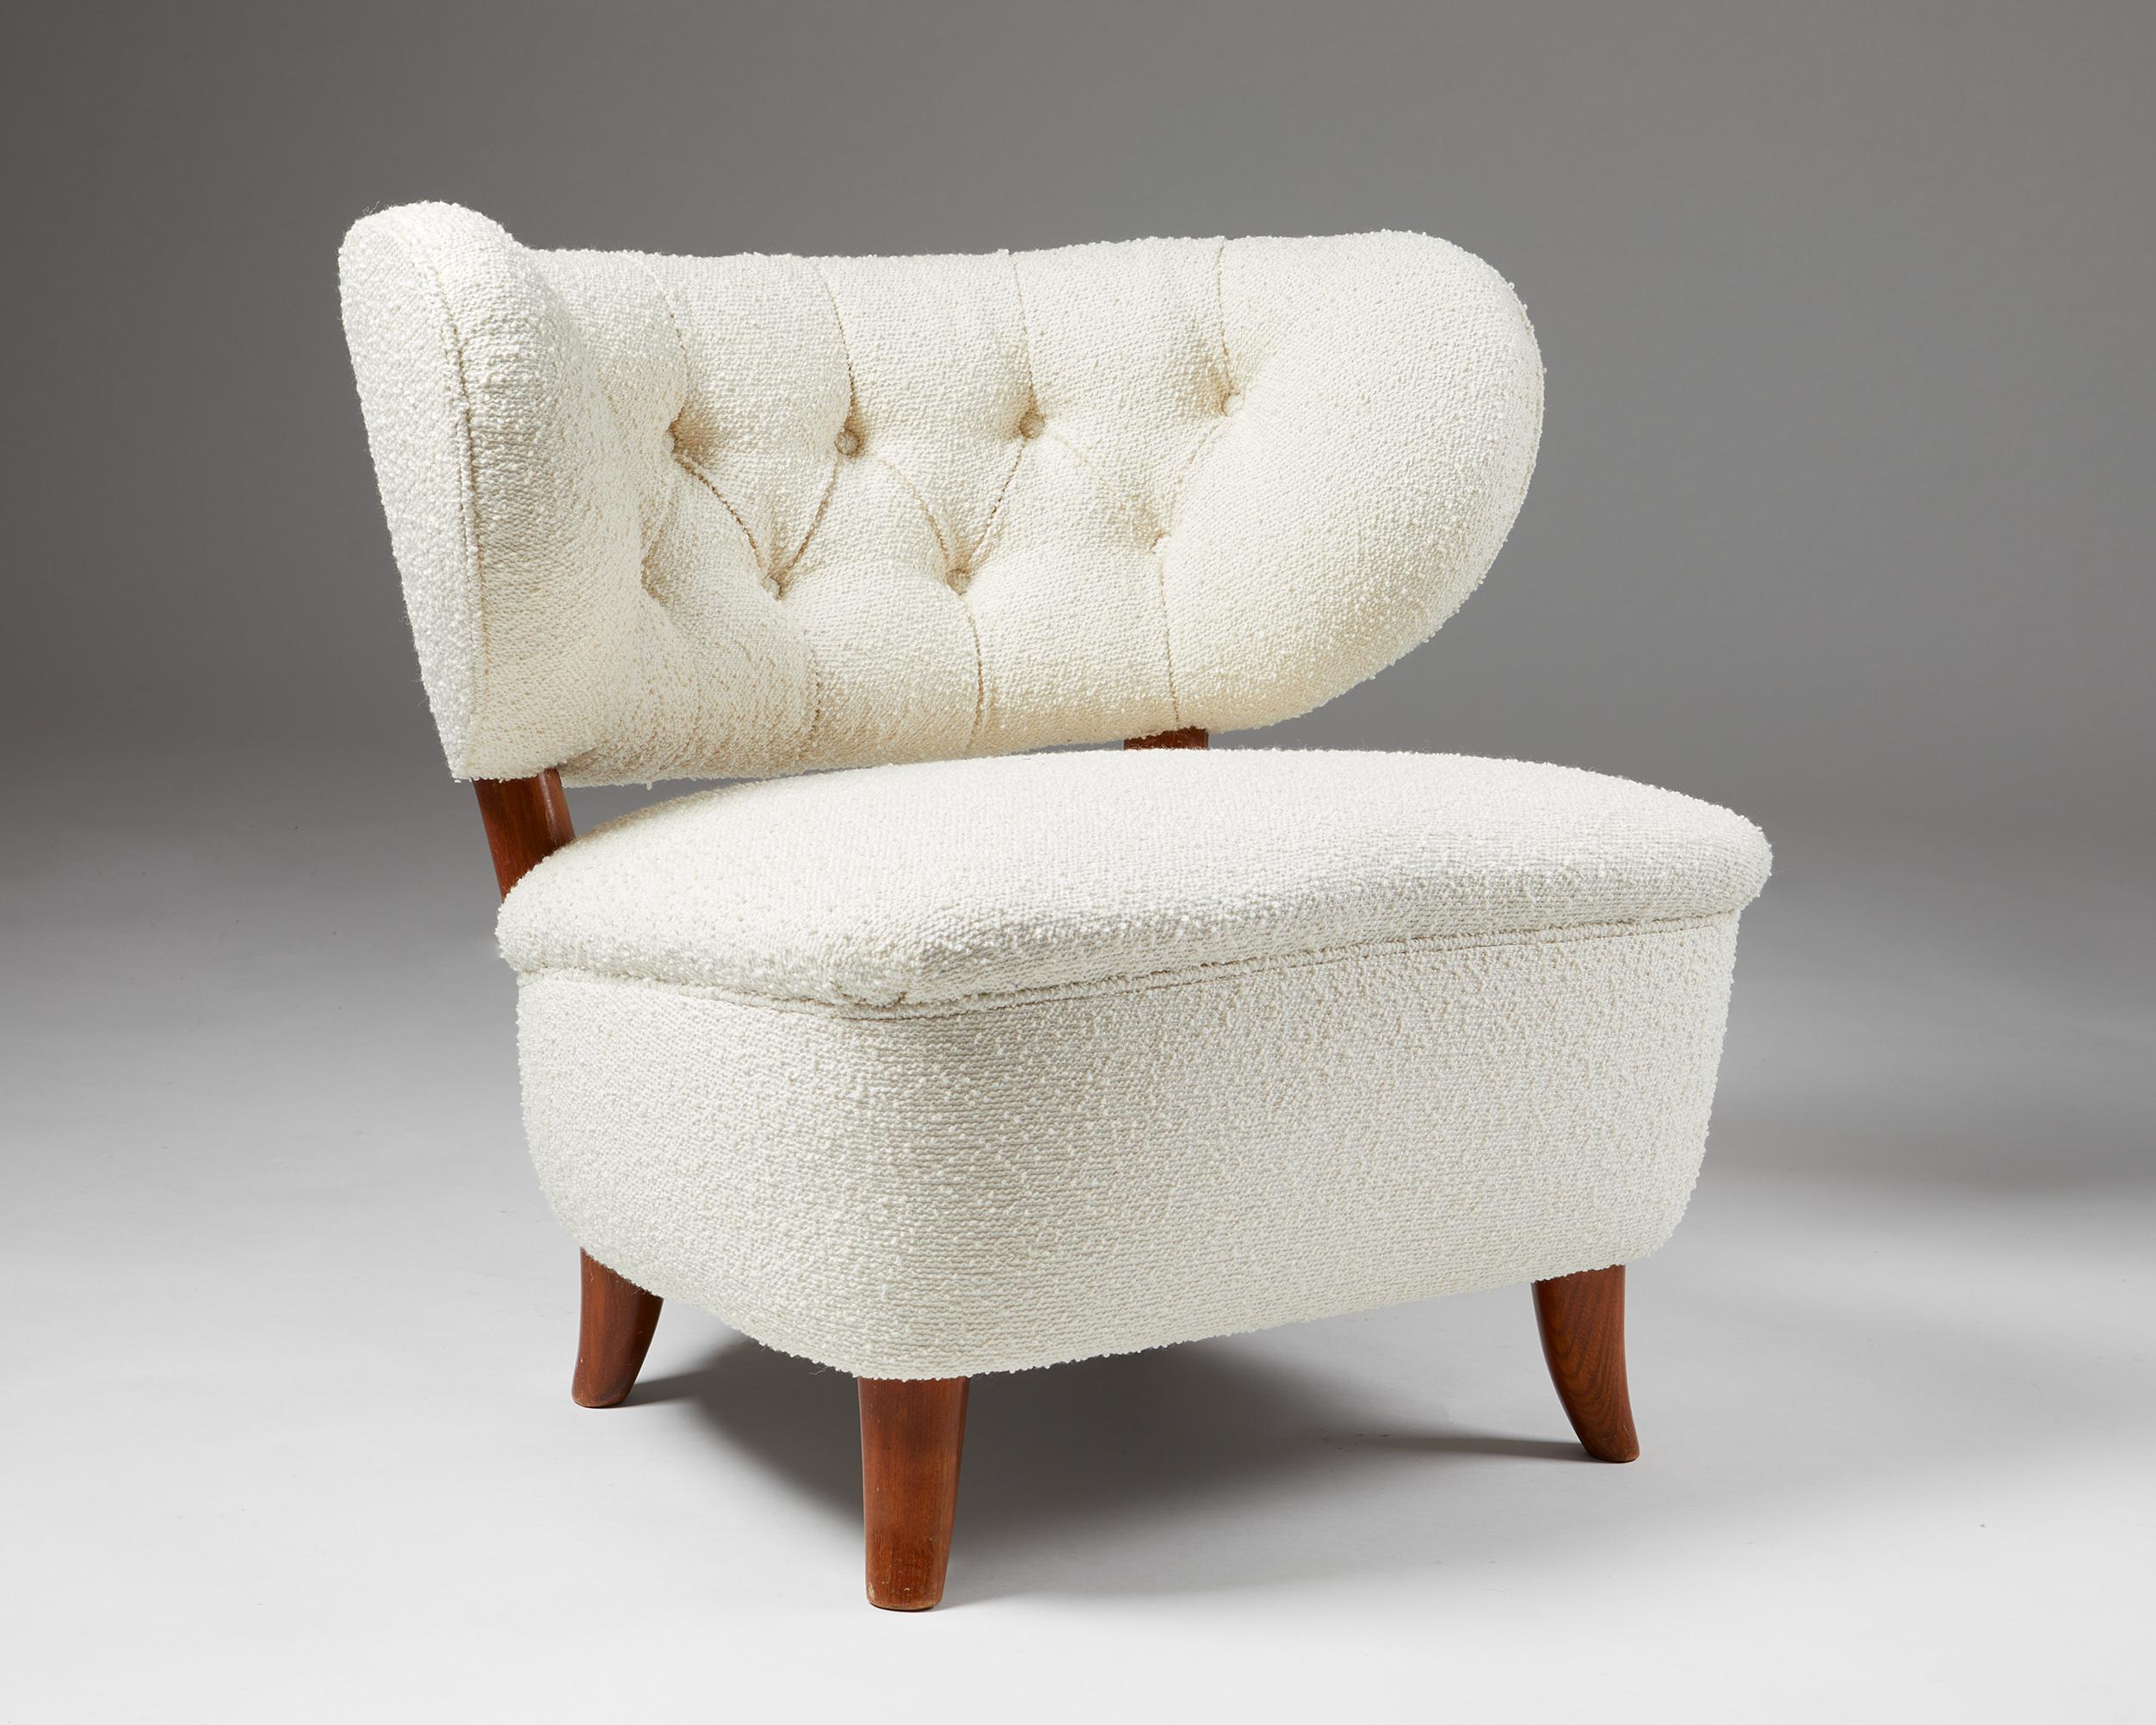 Fauteuil conçu par Otto Shulz, pour Boet,
Suède. 1940s.
Revêtement en laine et bois laqué.

Ce modèle Schulz est l'une des plus rares et des plus belles chaises du designer. Il a été récemment retapissé dans le plus luxueux tissu Boucle par l'un